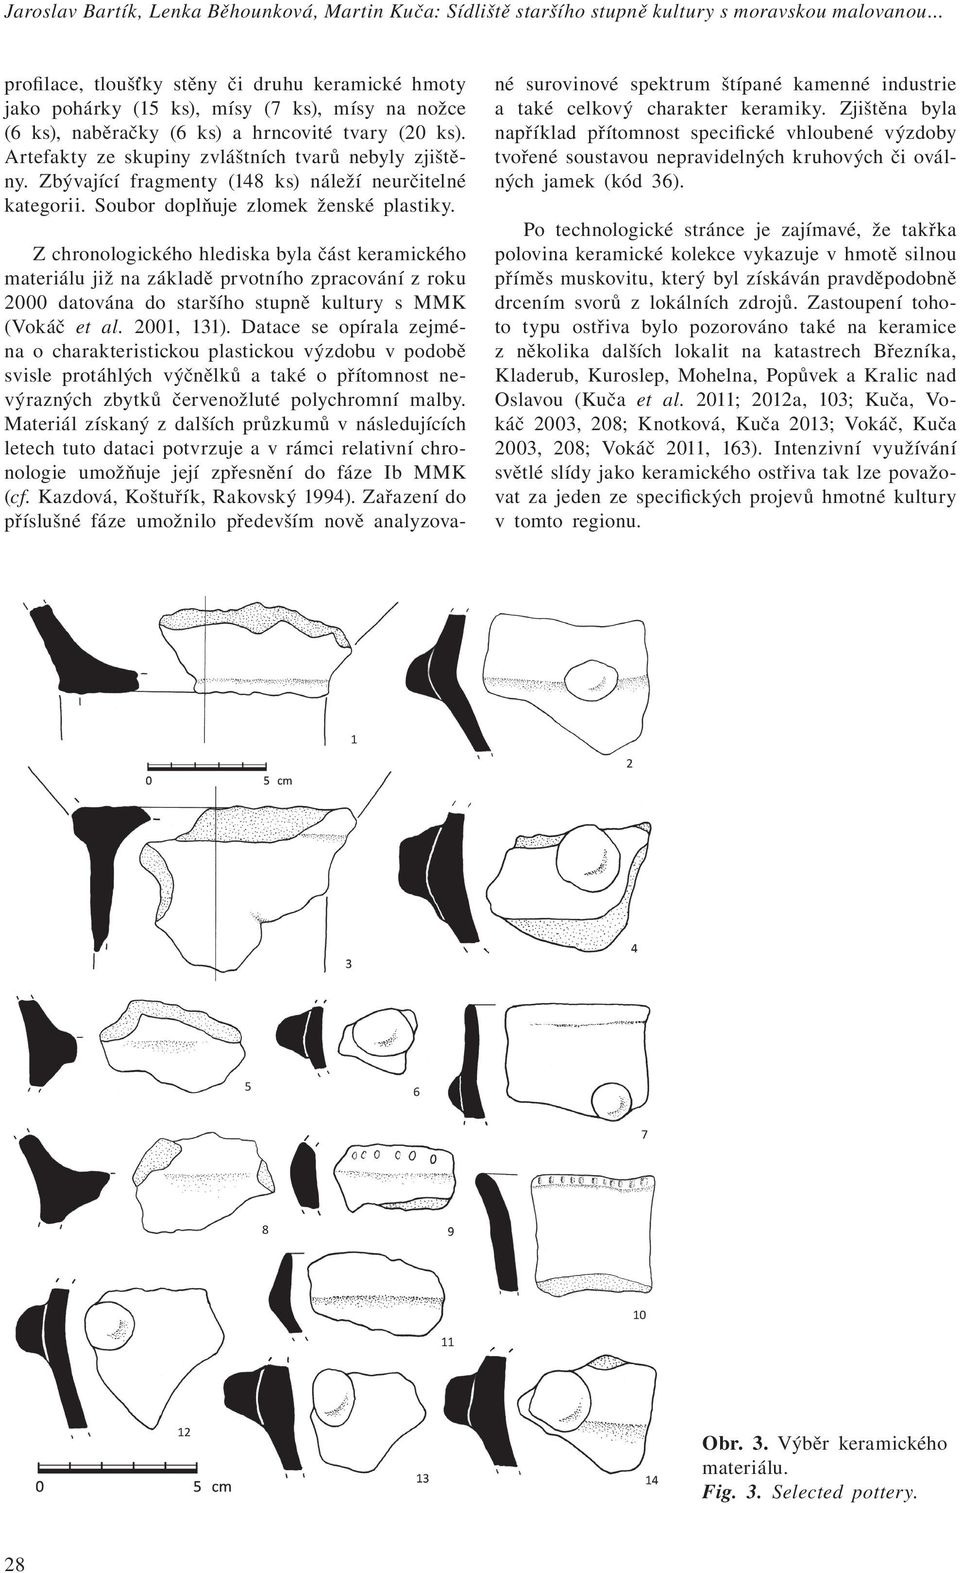 Artefakty ze skupiny zvláštních tvarů nebyly zjištěny. Zbývající fragmenty (148 ks) náleží neurčitelné kategorii. Soubor doplňuje zlomek ženské plastiky.